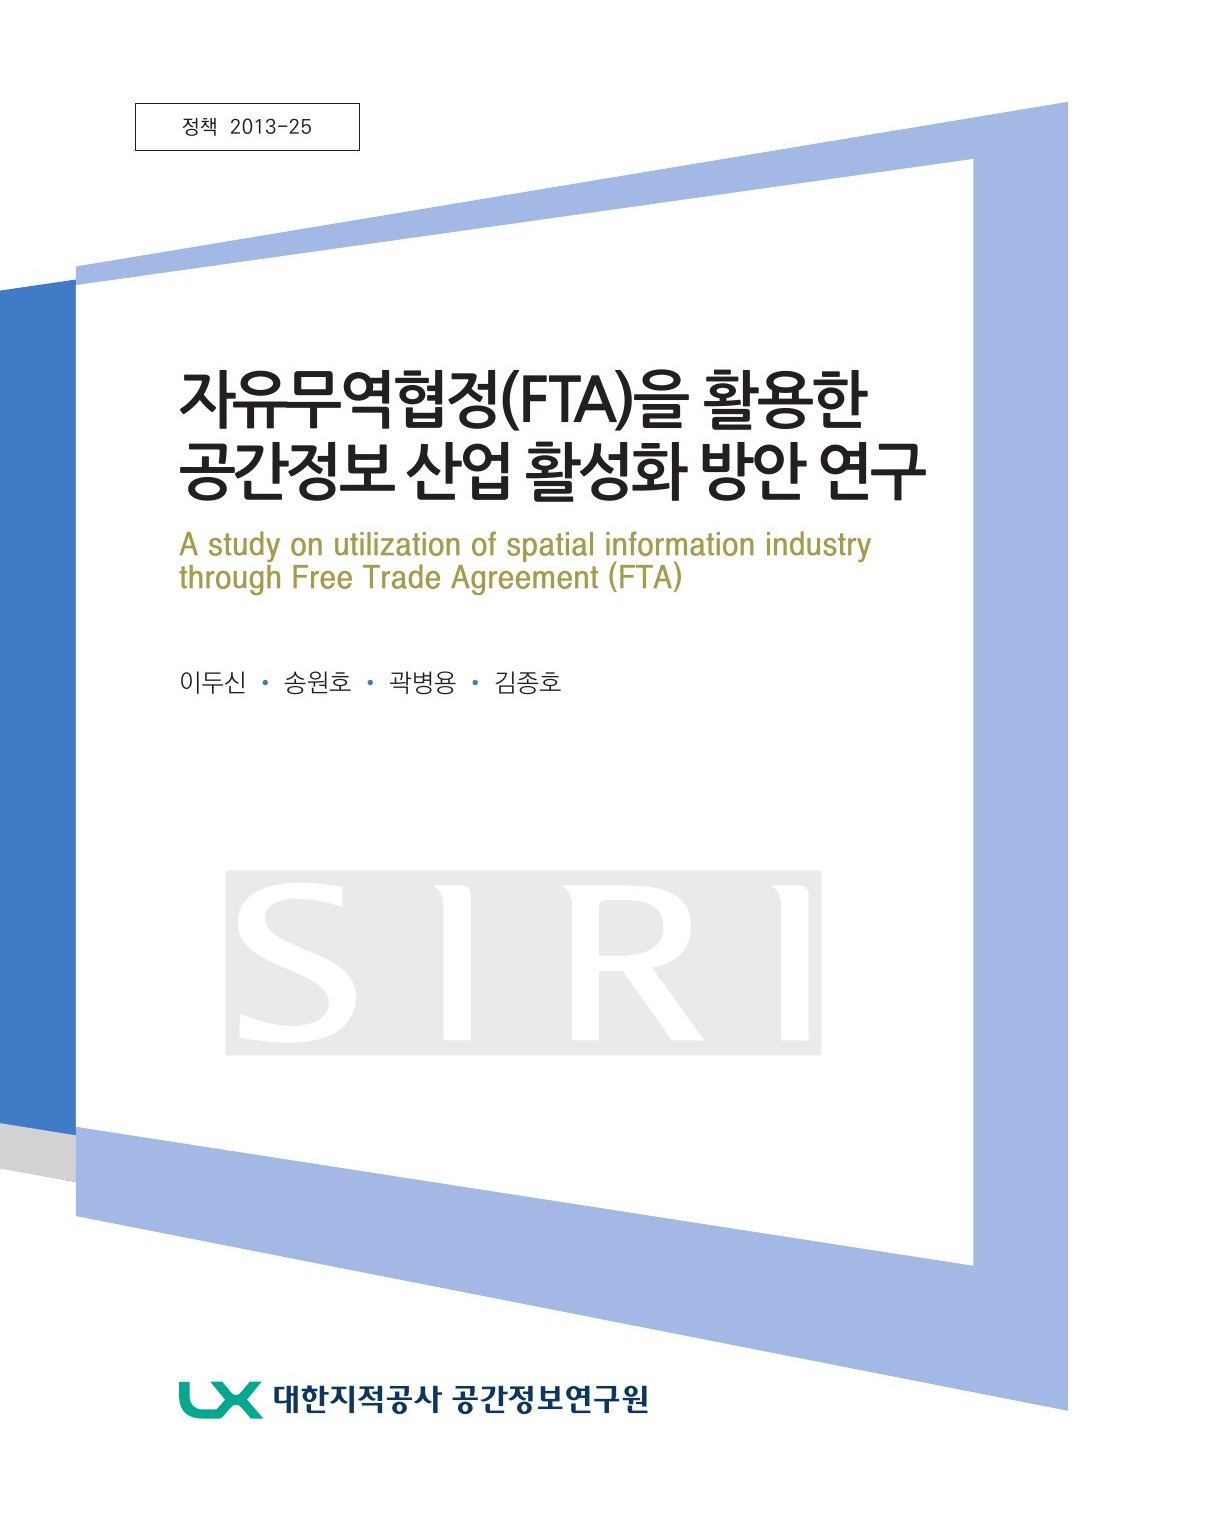 자유무역협정(FTA)을 활용한 공간정보 산업 활성화 방안 연구